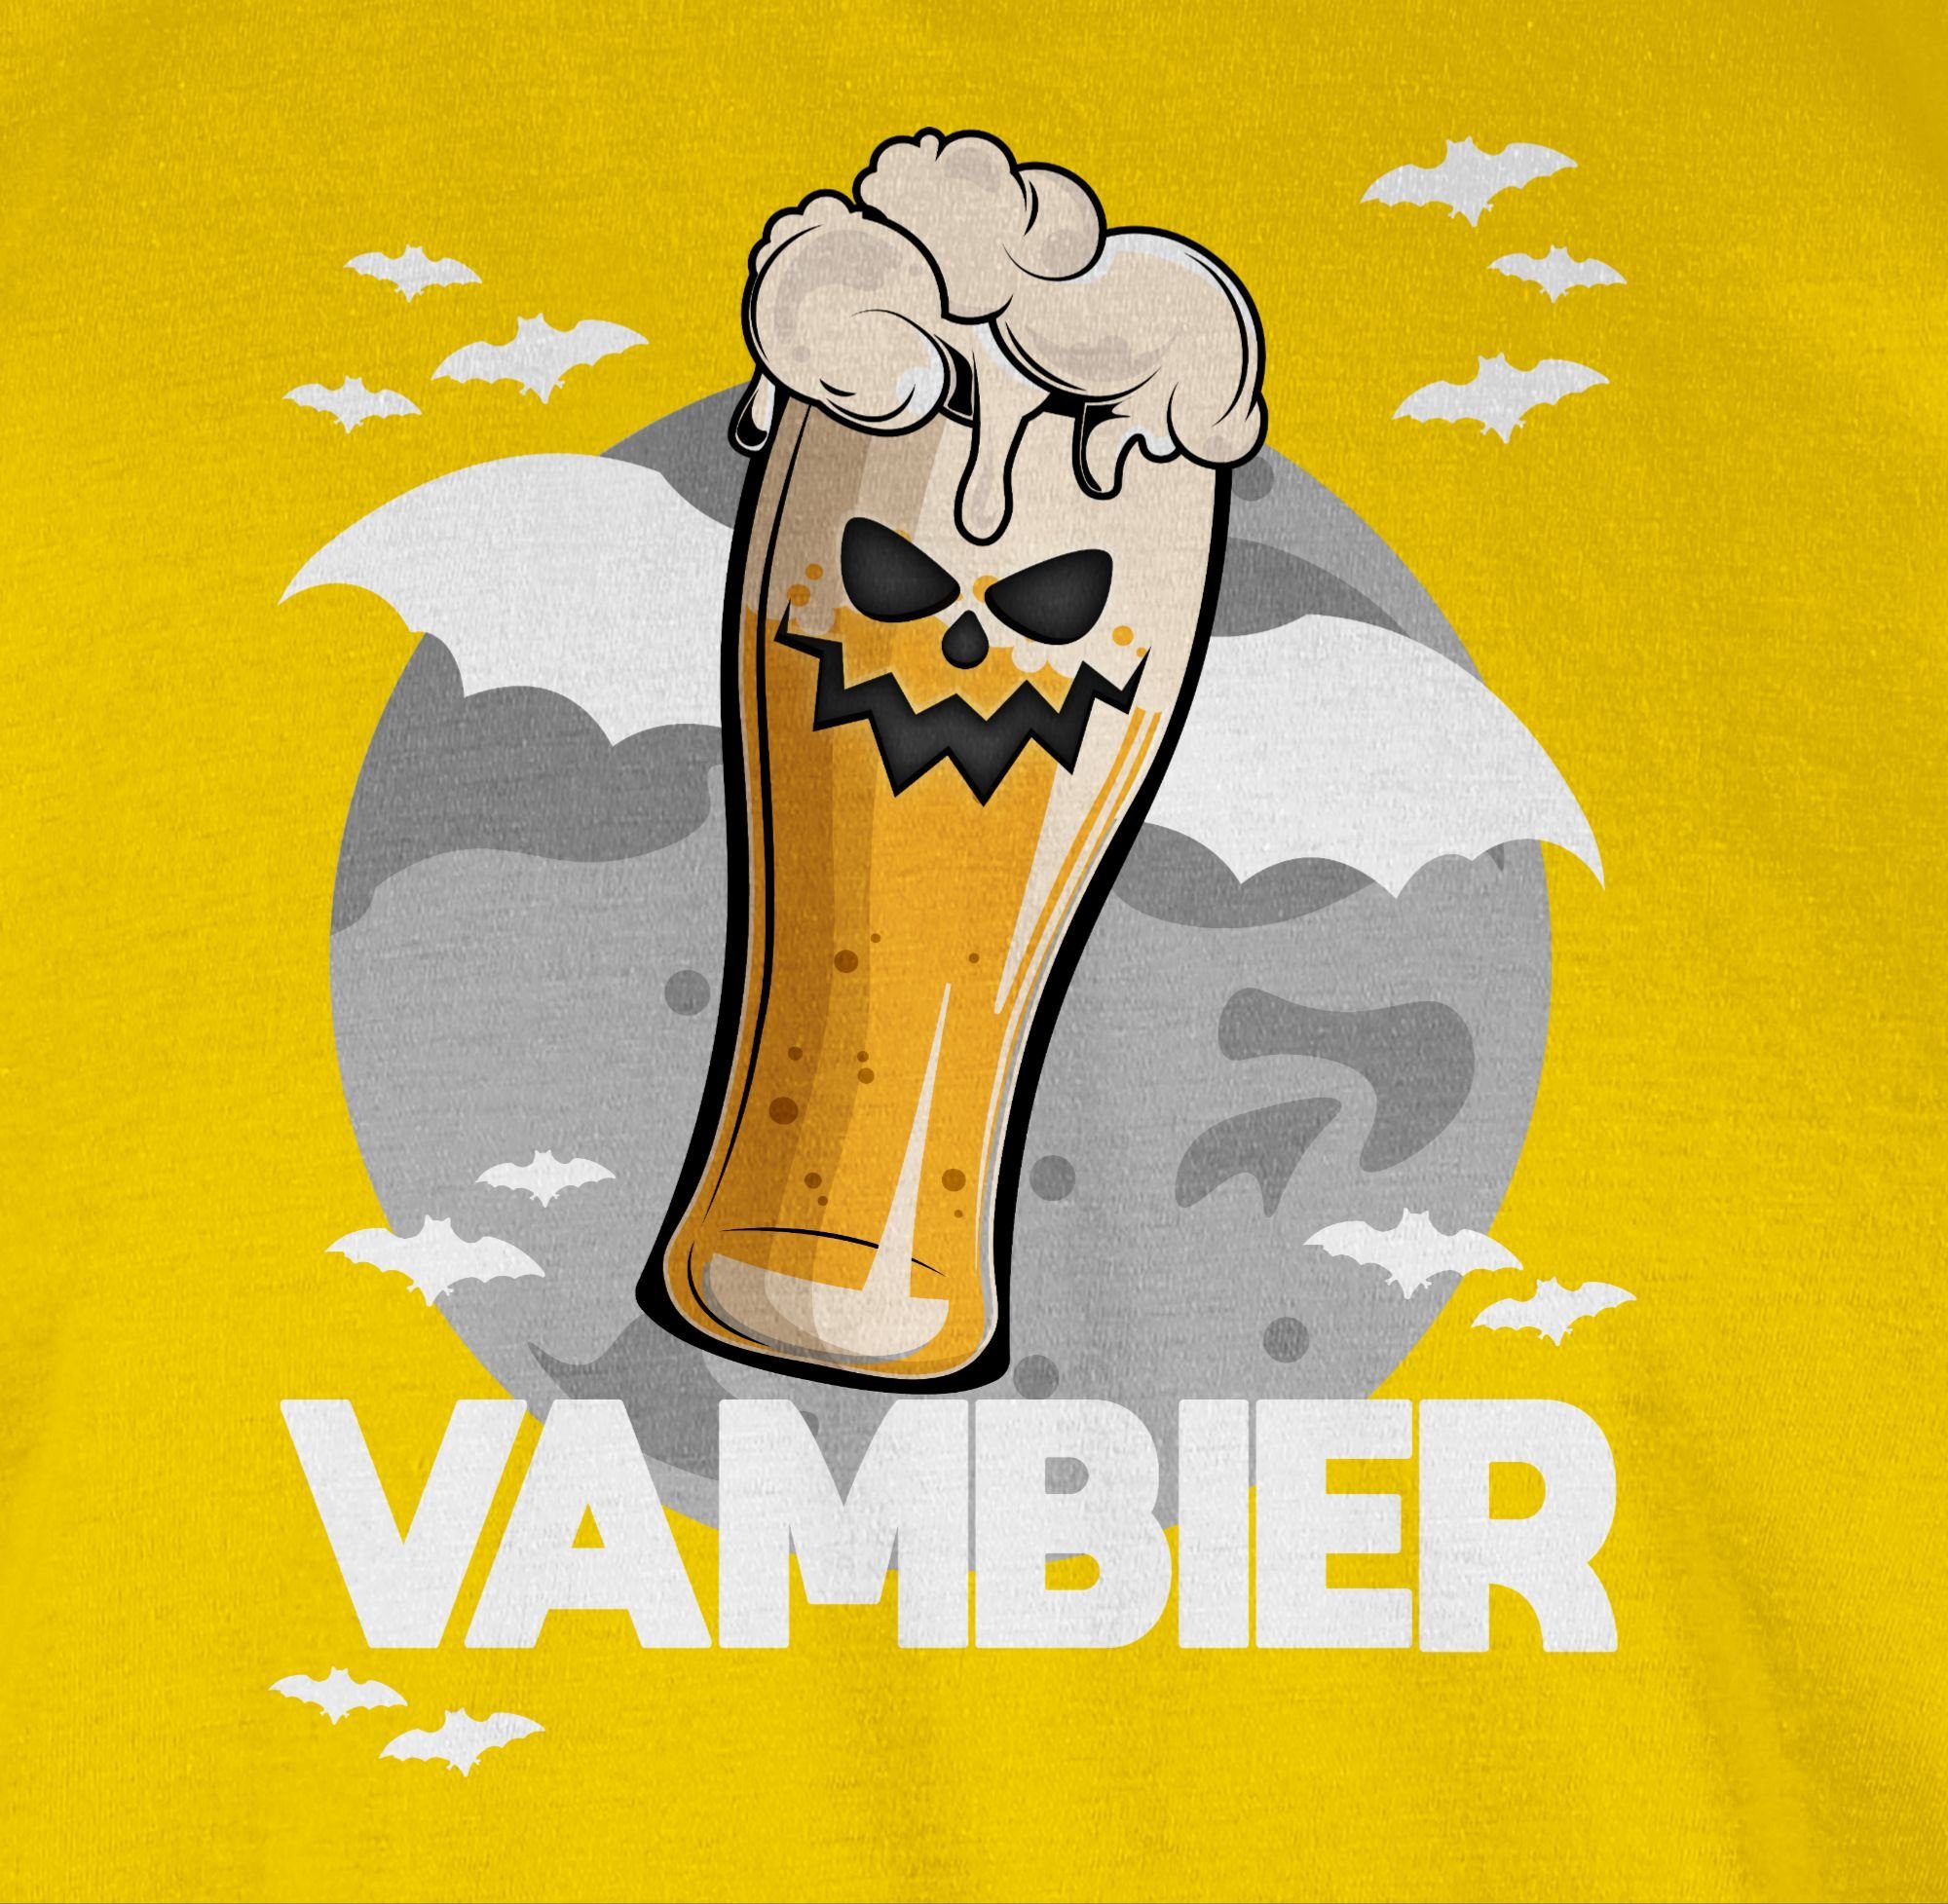 Herren Bier Geschenk Kostüme T-Shirt Vambier Shirtracer Zombie Gelb 05 Halloween